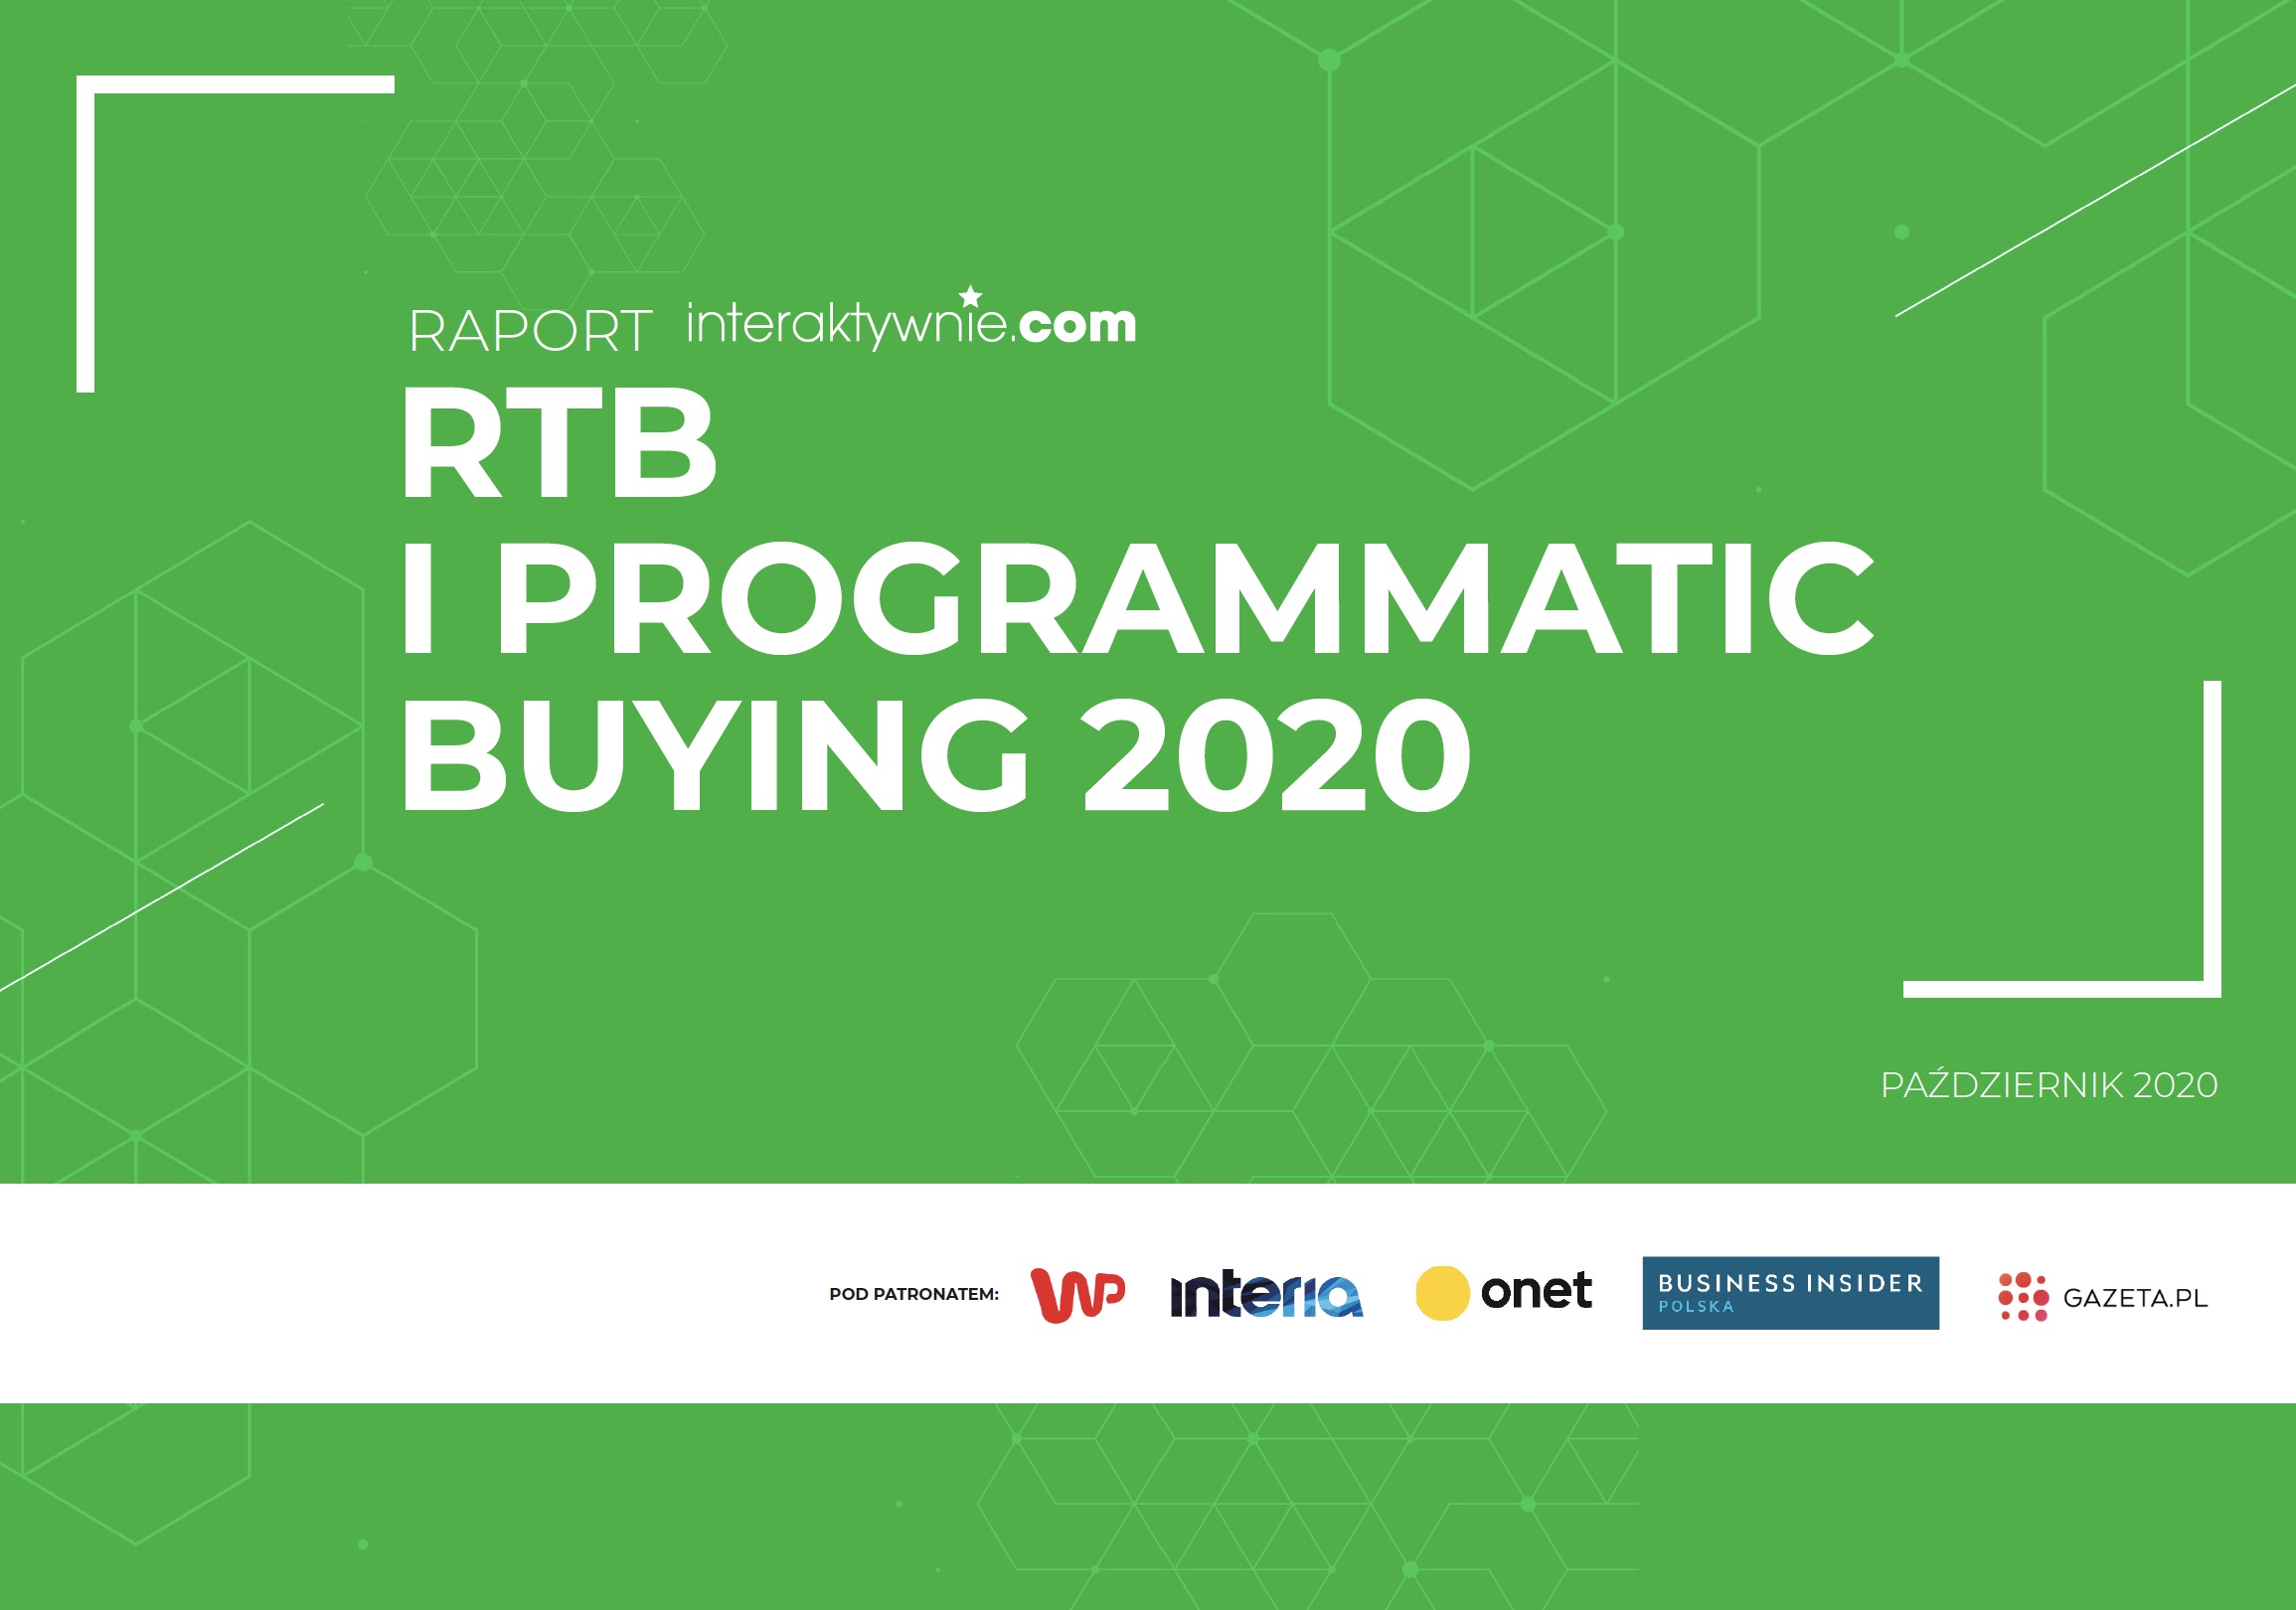 Raport Programmatic Buying i RTB